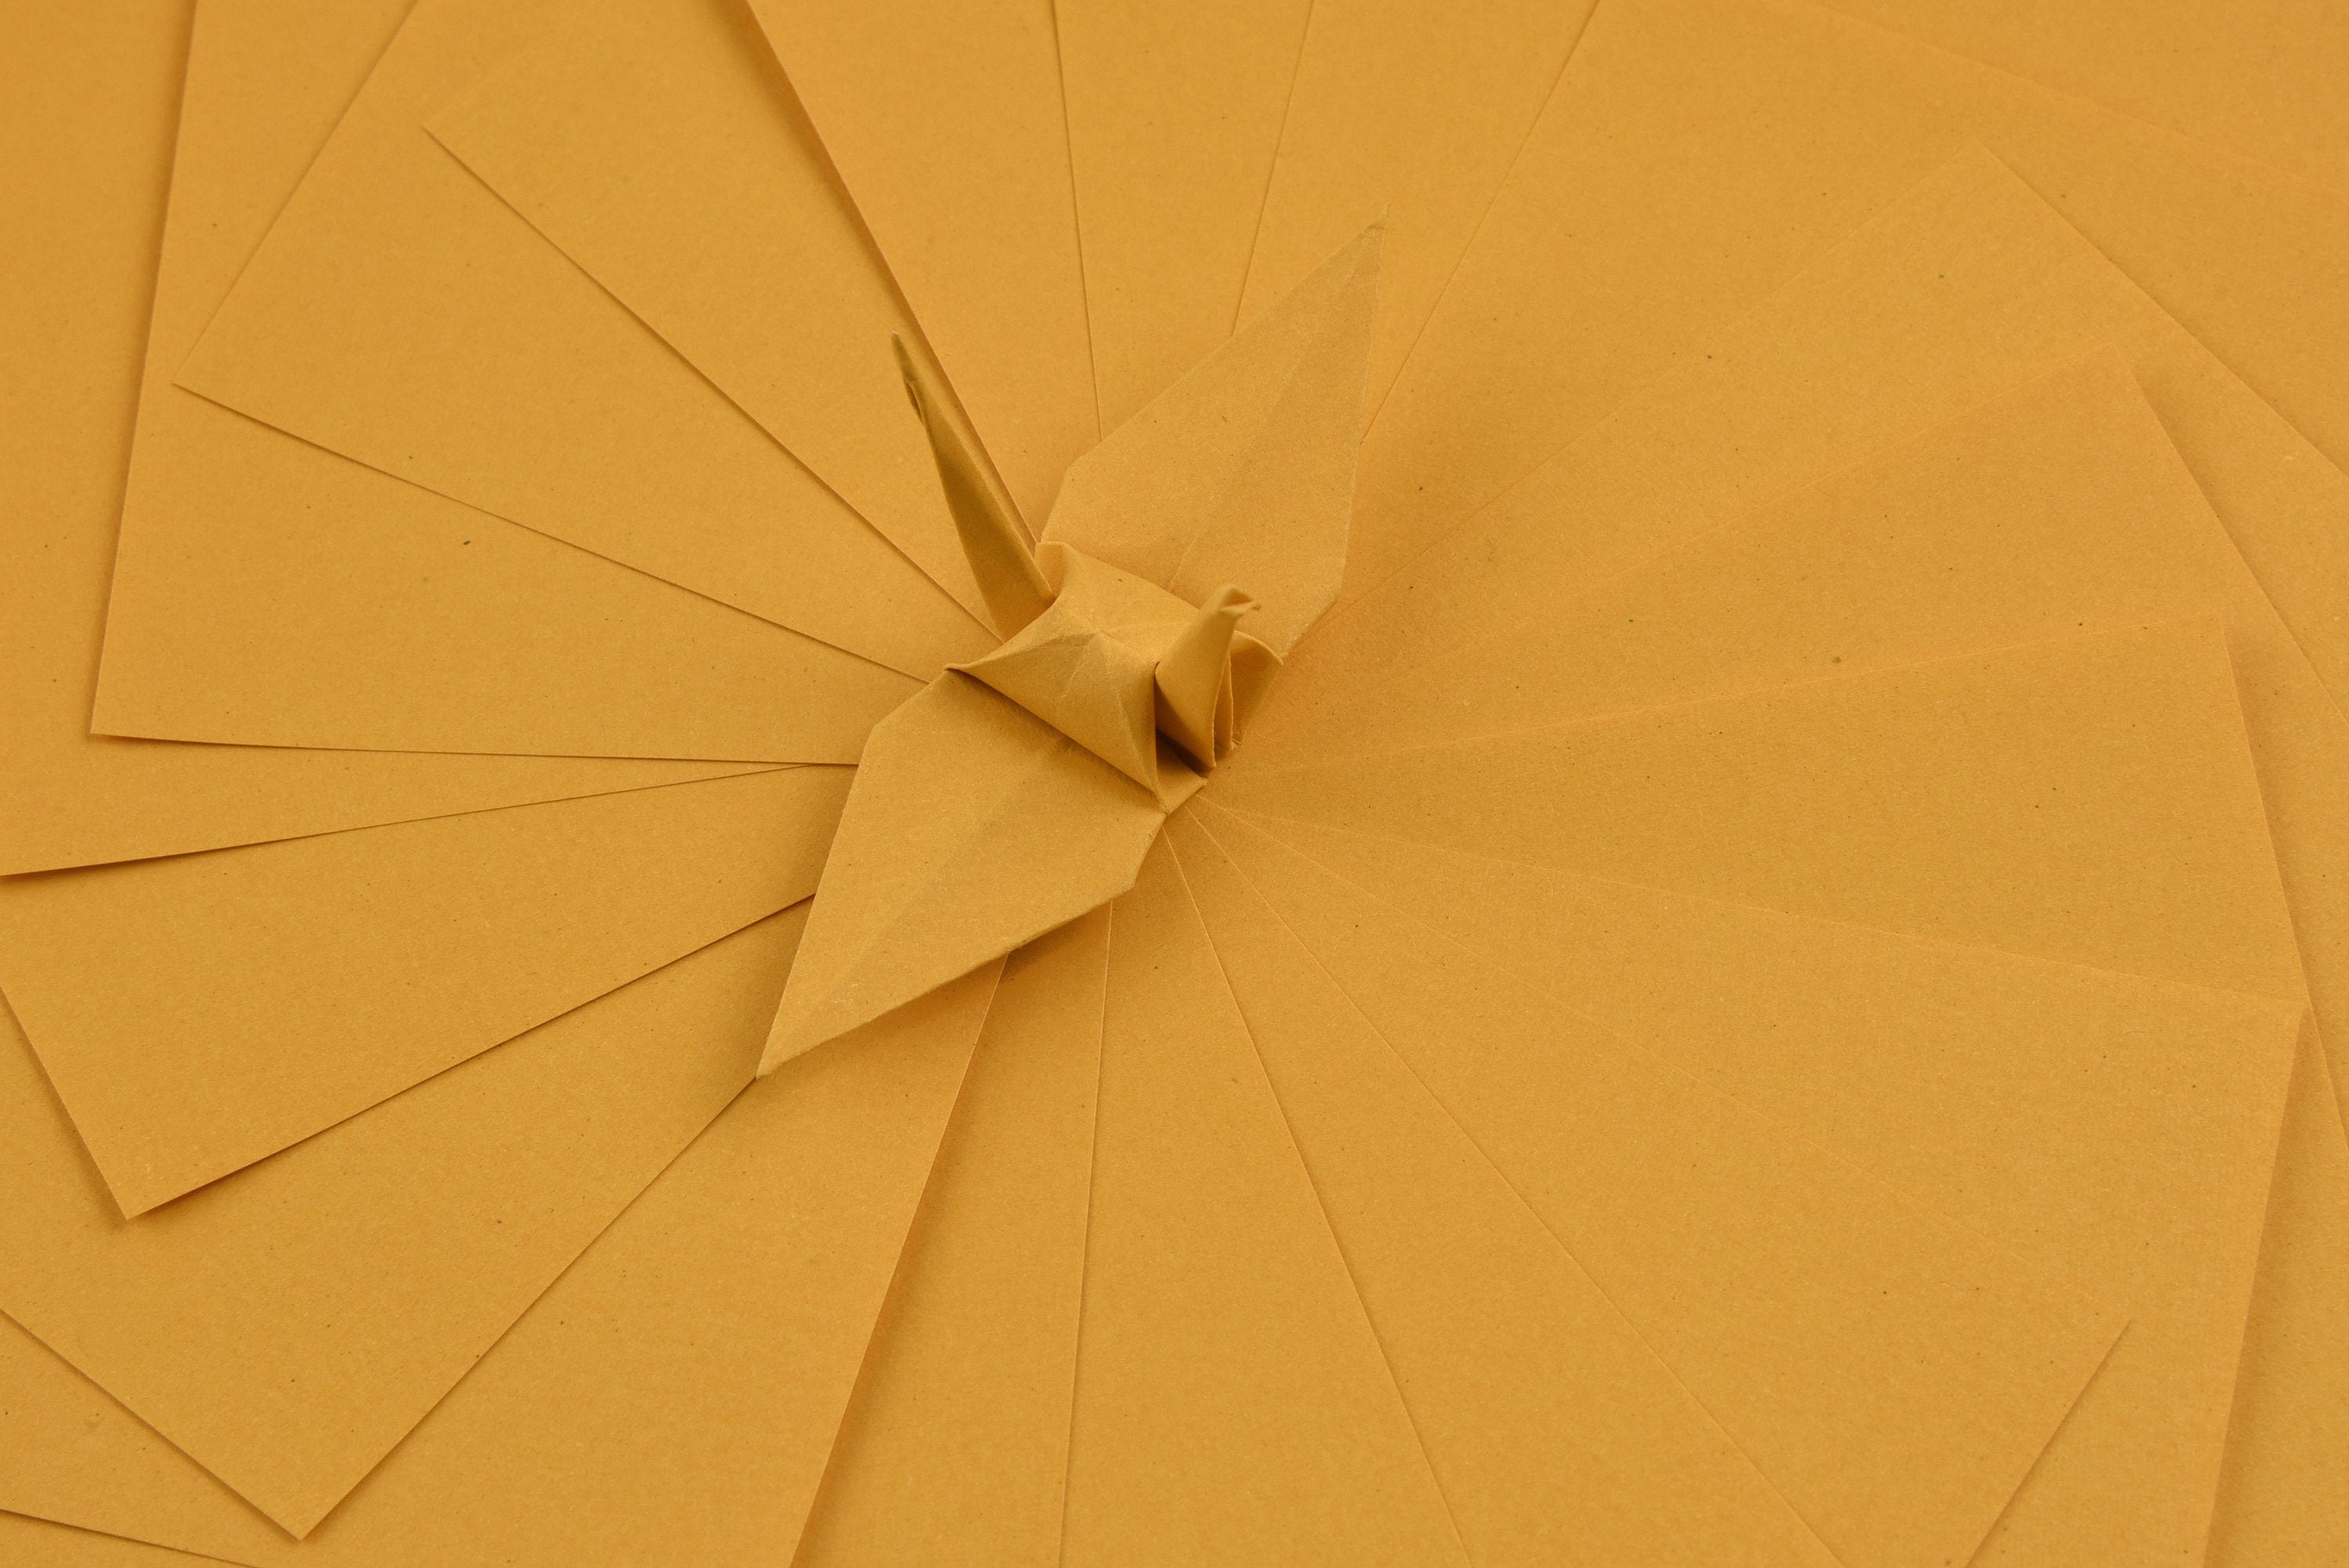 100 Hojas de Papel Origami - 3x3 pulgadas - Paquete de Papel Cuadrado para Plegar, Grullas de Origami y Decoración - S27